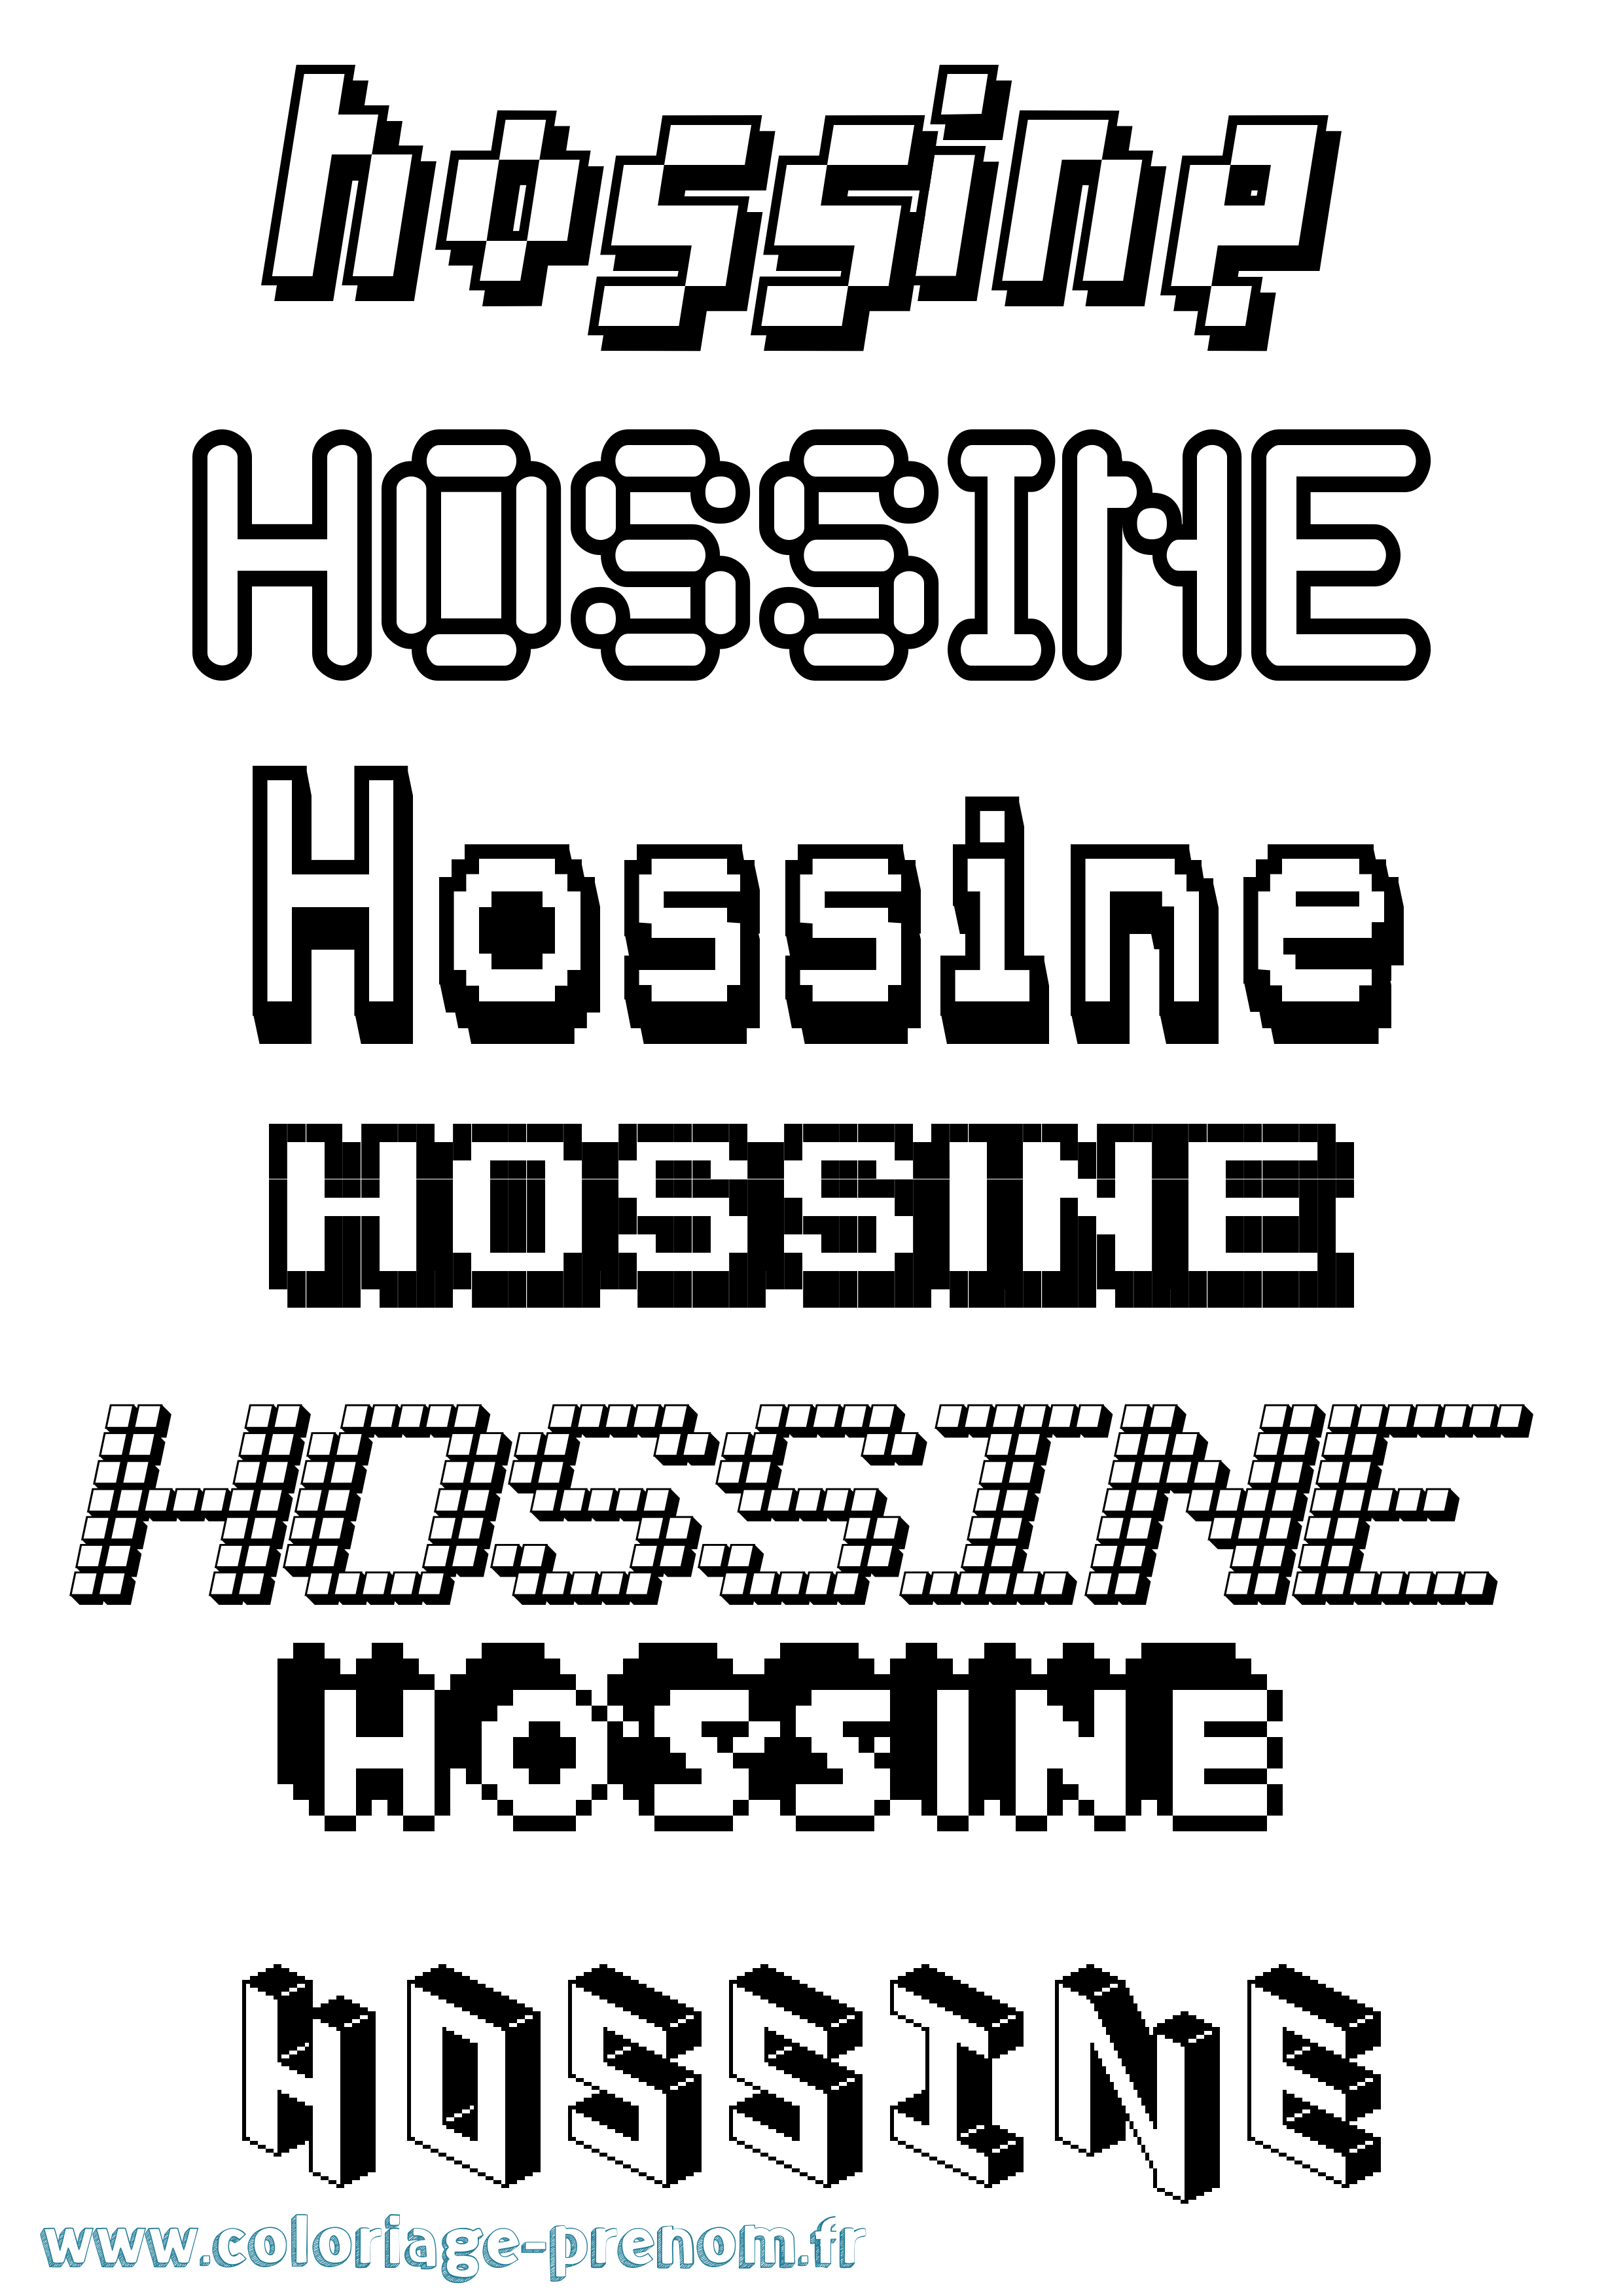 Coloriage prénom Hossine Pixel